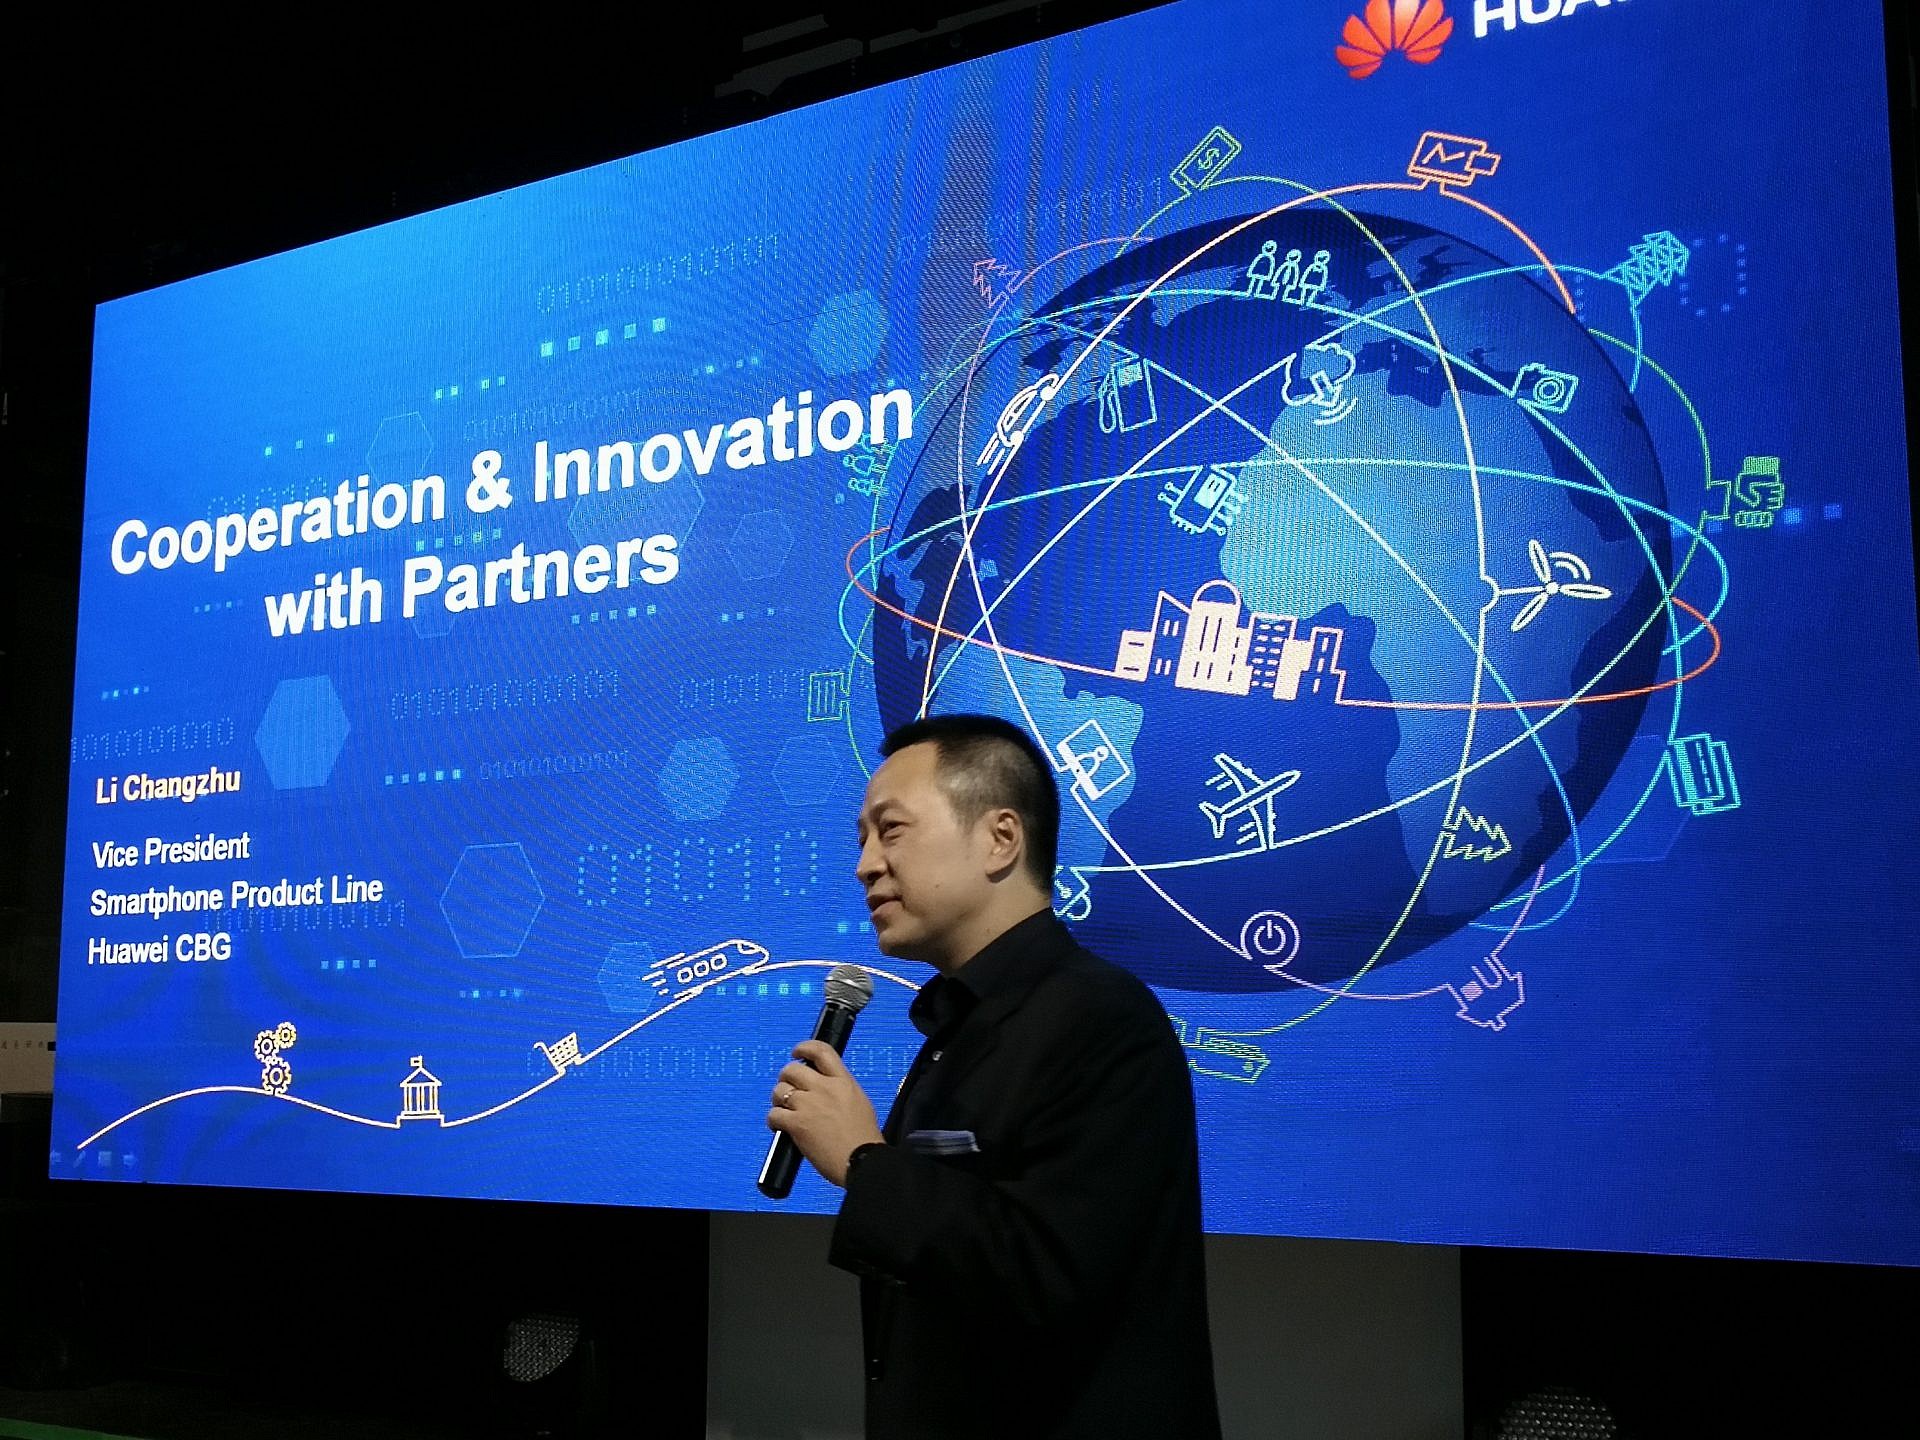 ประกาศยุทธศาสตร์ปี 2018 เผยก้าวต่อไปของ Huawei